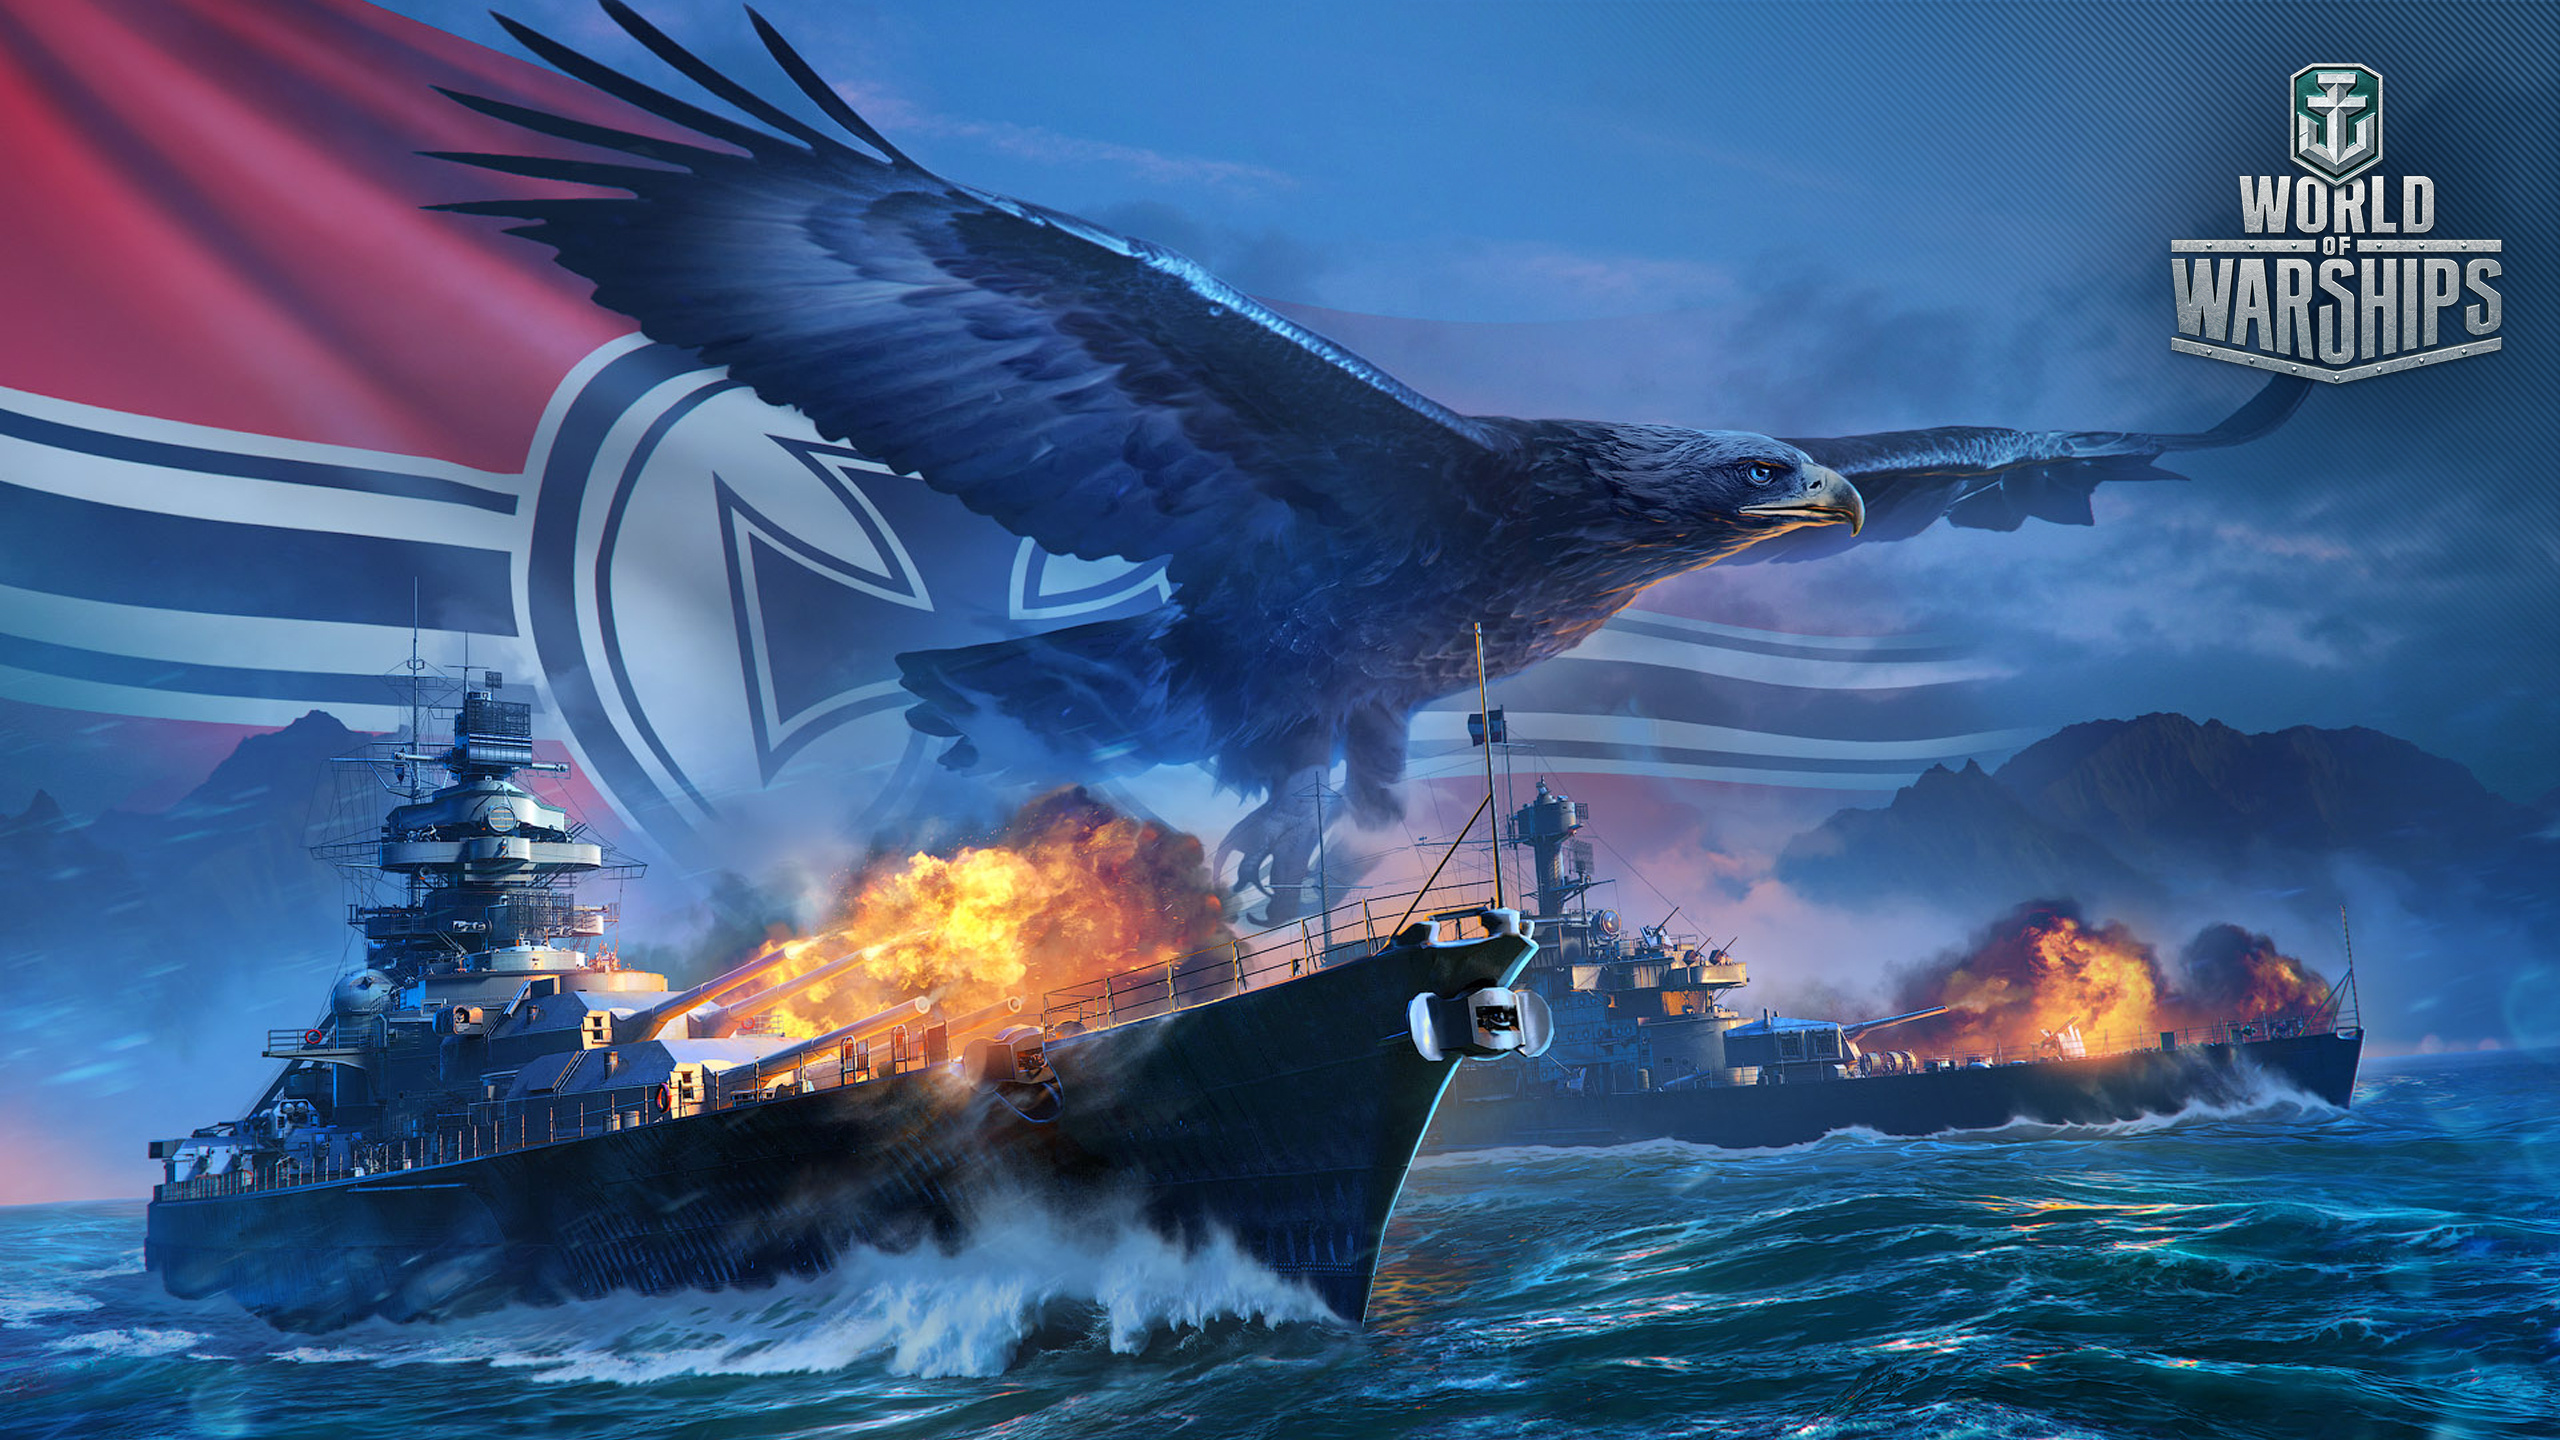 壁紙 2560x1440 World Of Warship 船 イーグル ドイツ語 ゲーム 陸軍 ダウンロード 写真